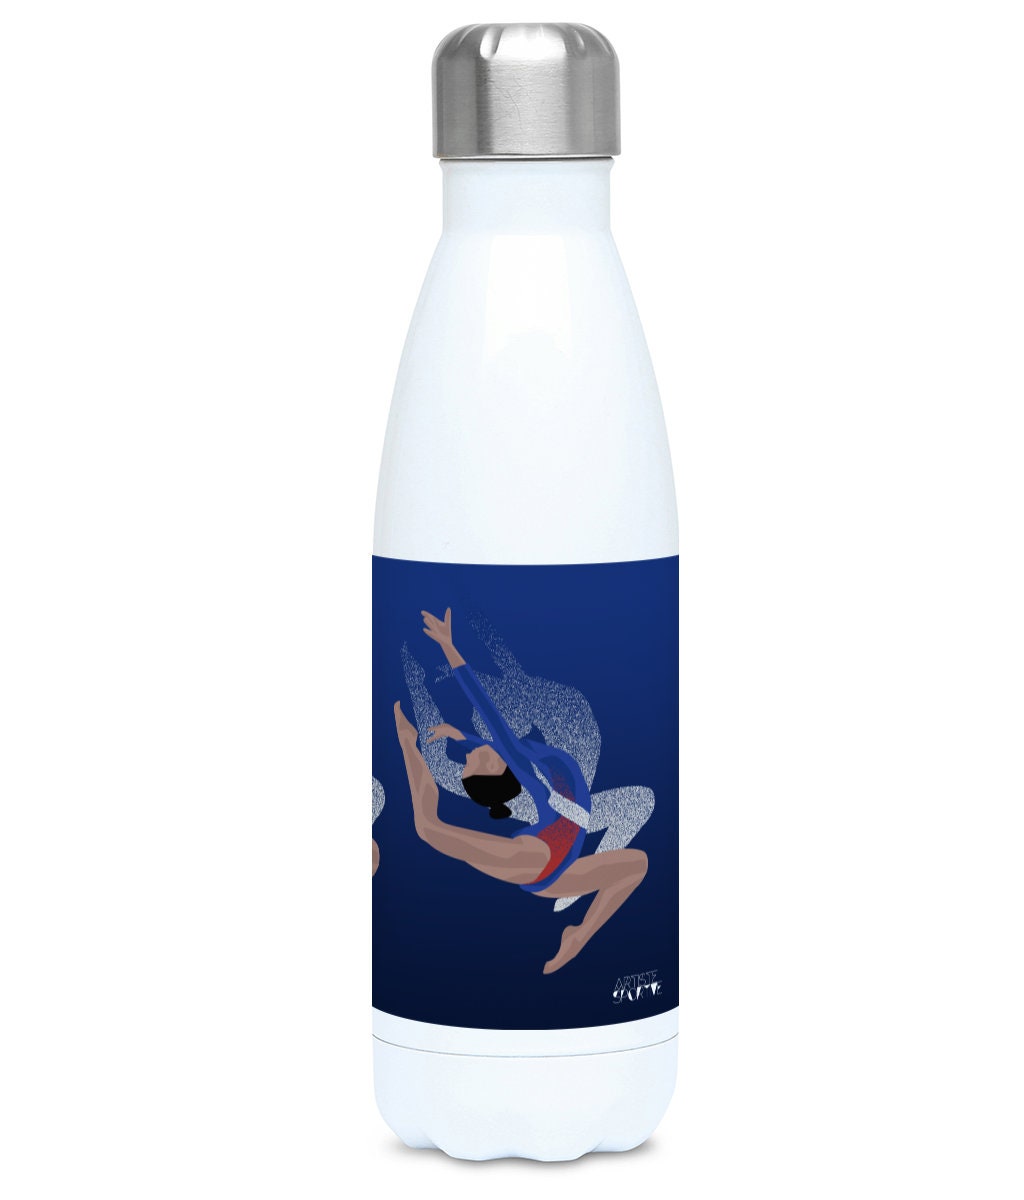 Blaue Gymnastik-Isolierflasche „Tatiana die Turnerin“ – anpassbar